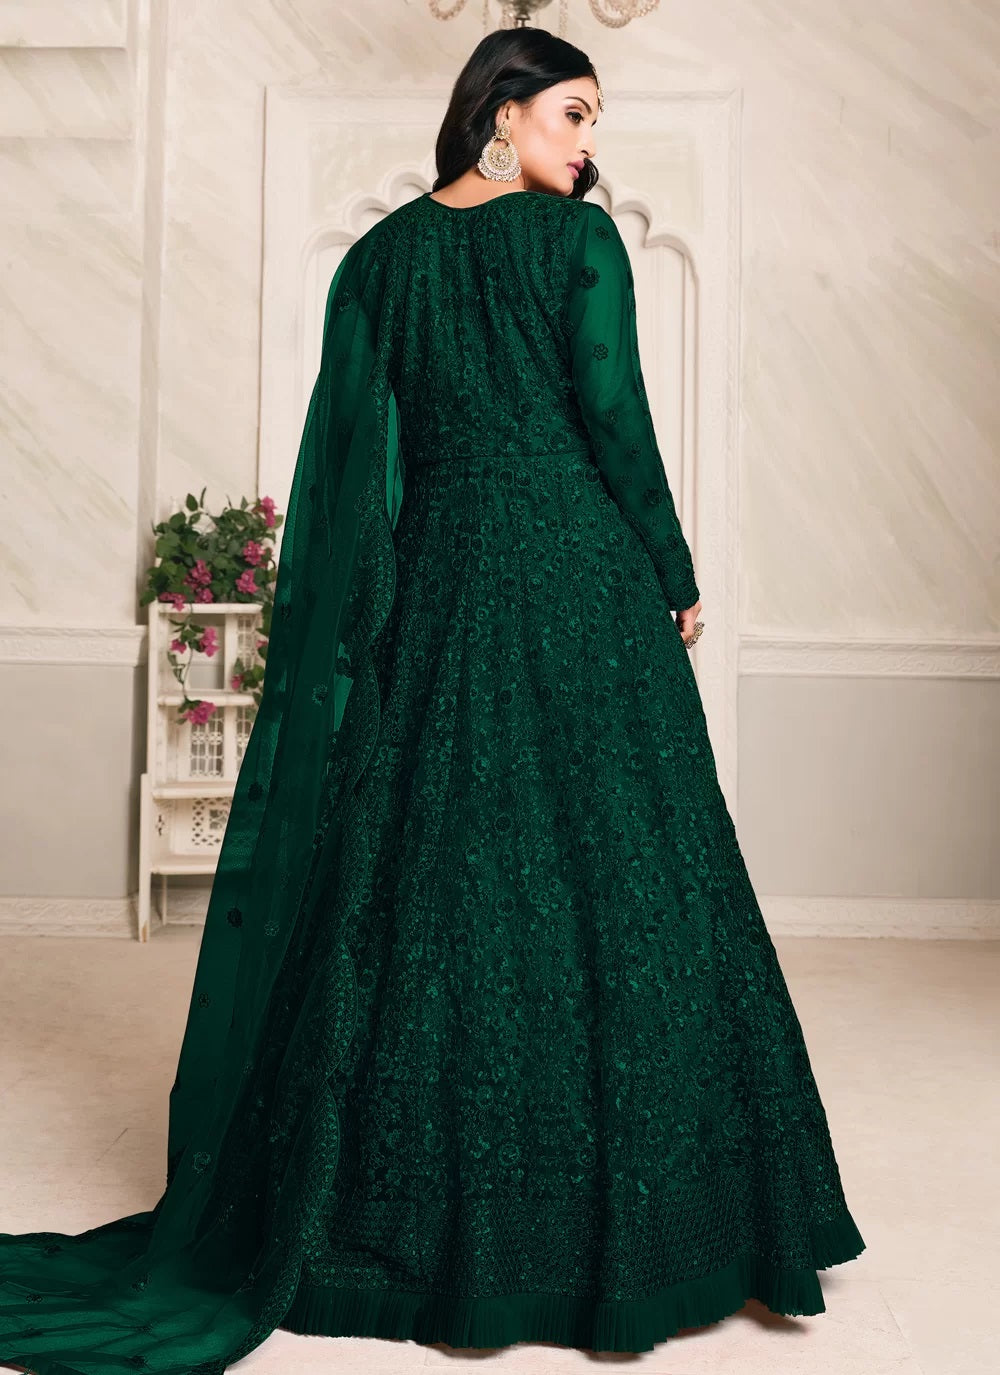 The Elegant Lace Abaya Gown - Abaya Gowns - Women | Shukr Clothing